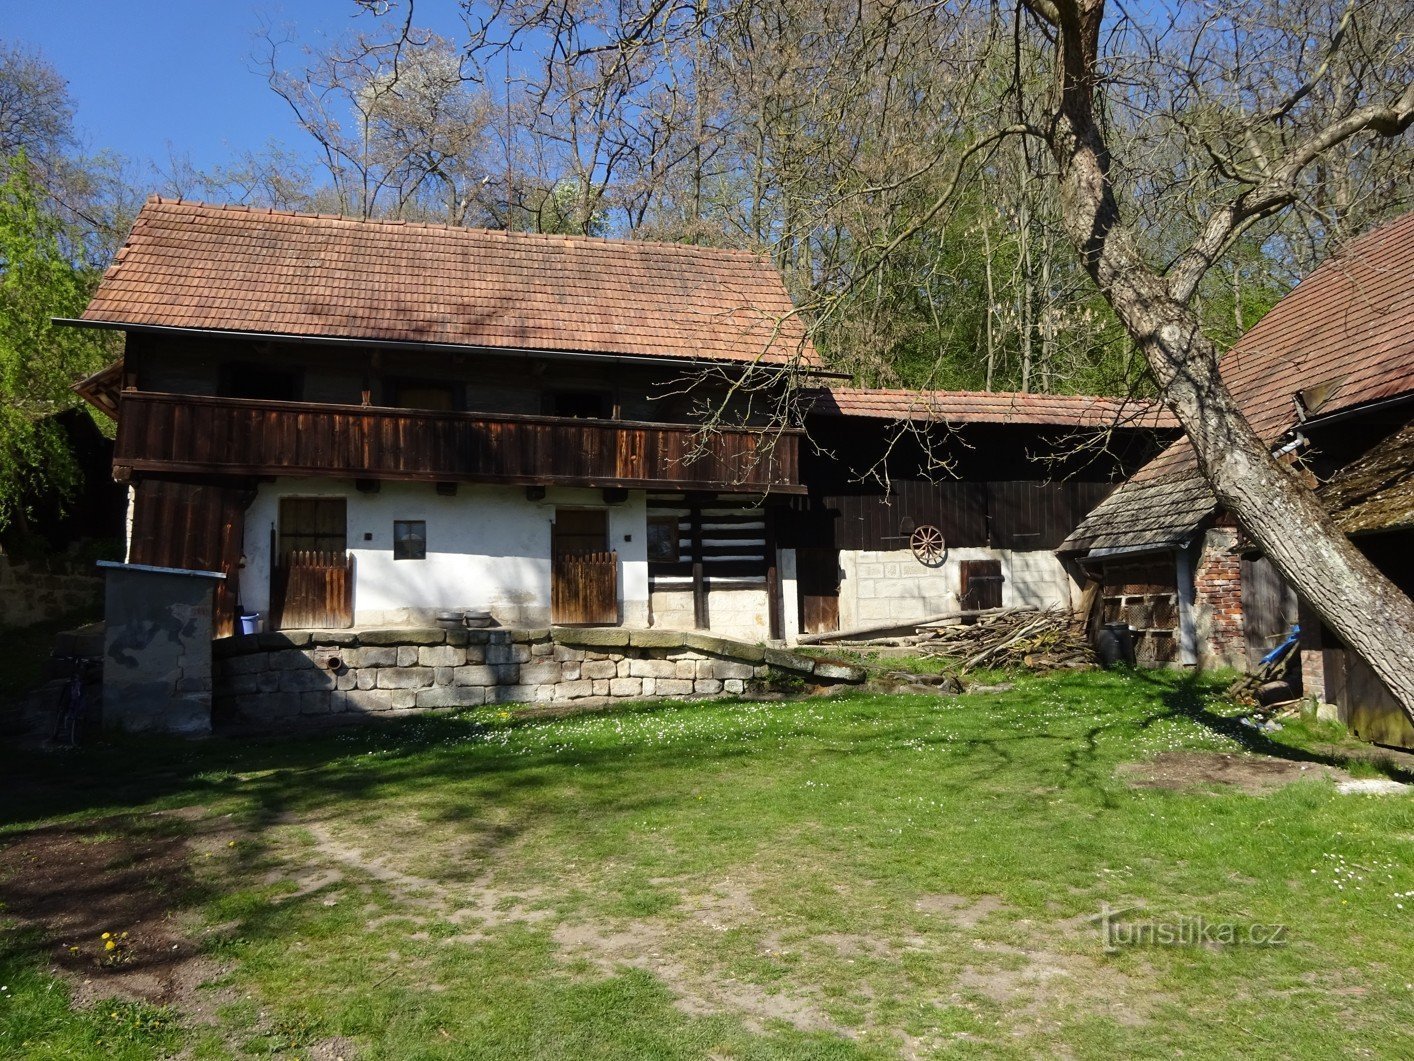 Το χωριό Střehom κοντά στο Dolní Bouzov και ο παραμυθένιος μύλος